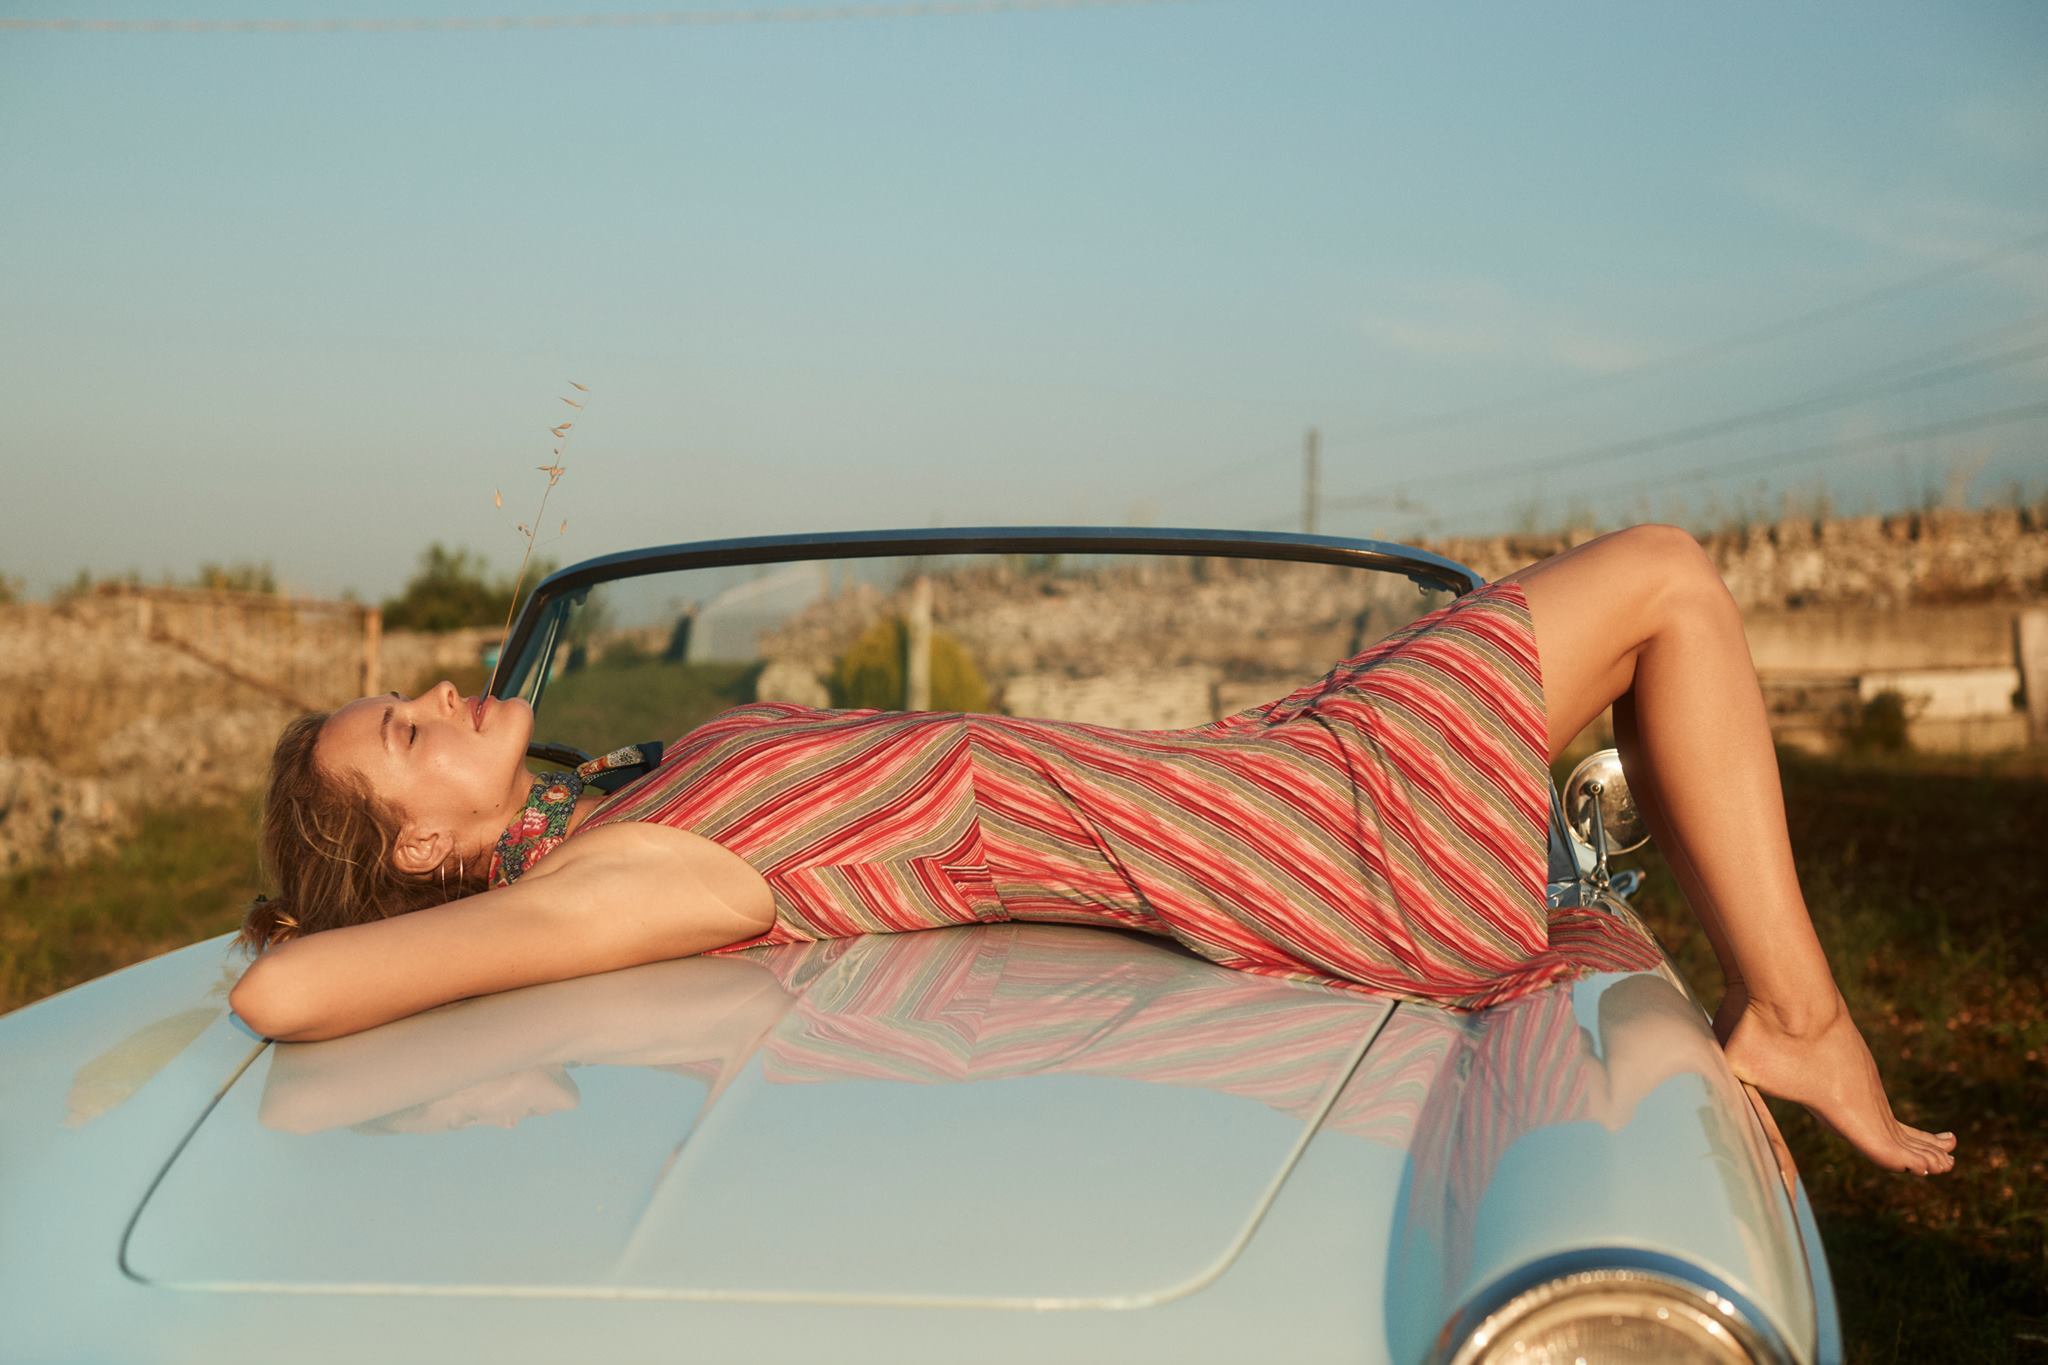 Видео на капоте машины. Девушка лежит на машине. Лежит на капоте. Девушка лежит на капоте. Девушка на капоте автомобиля.